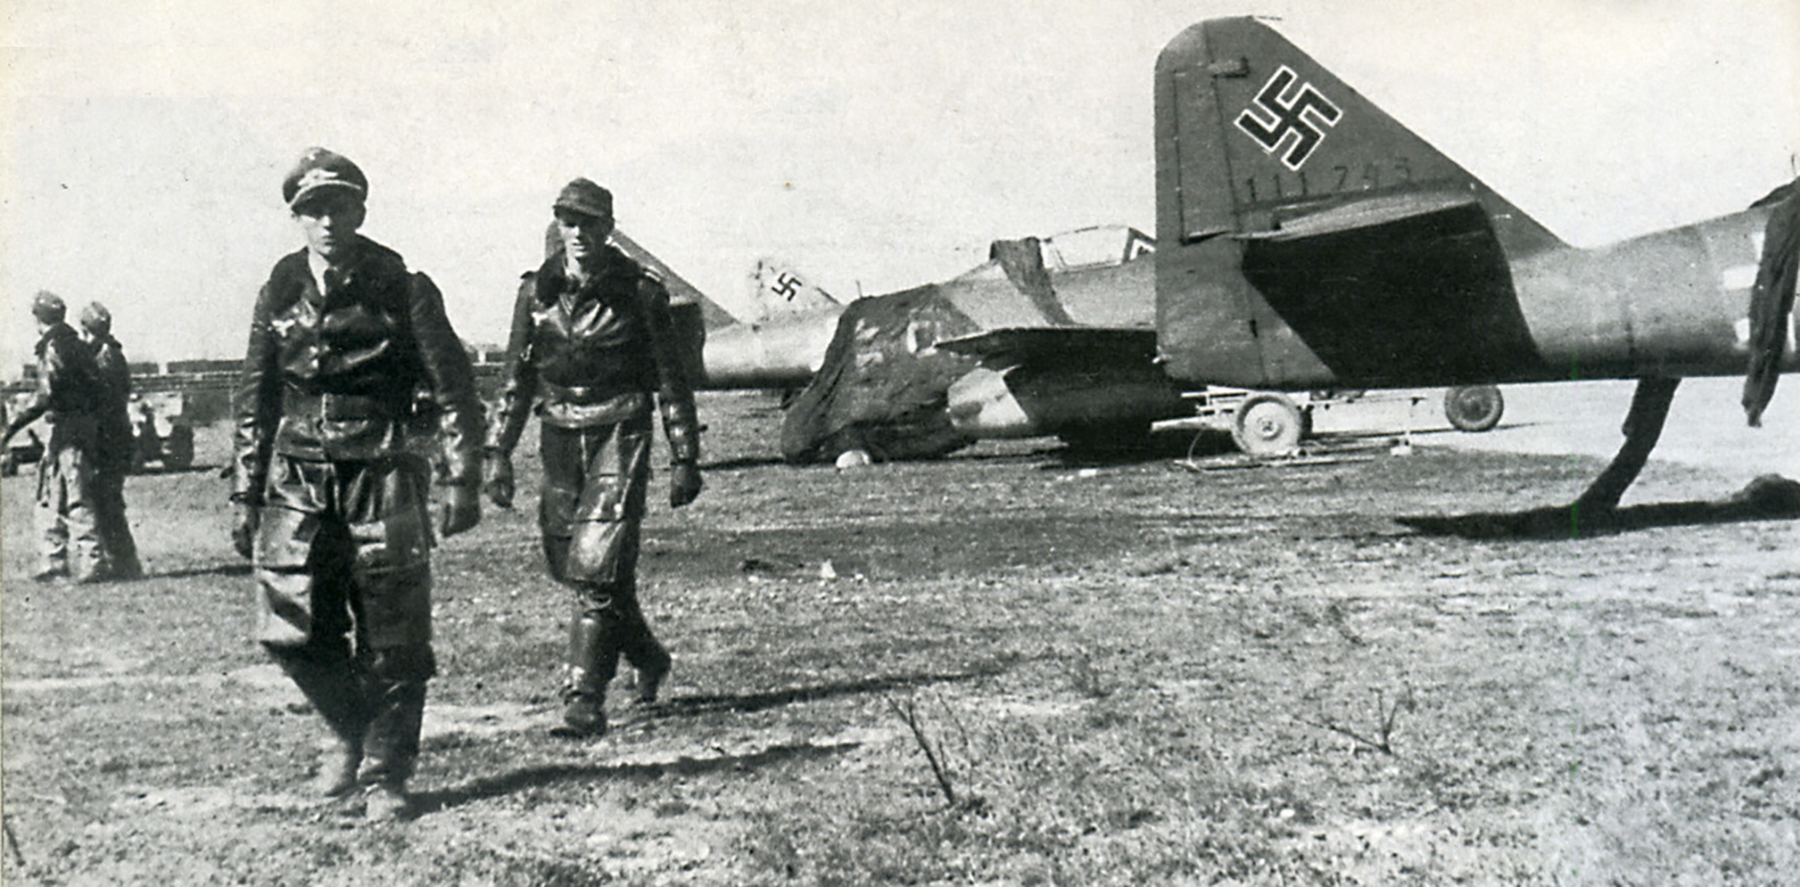 Messerschmitt-Me-262A1a-JV44-WNr-11745-and-Walter-Krupinski-background-Munich-Apr-1945-01.jpg